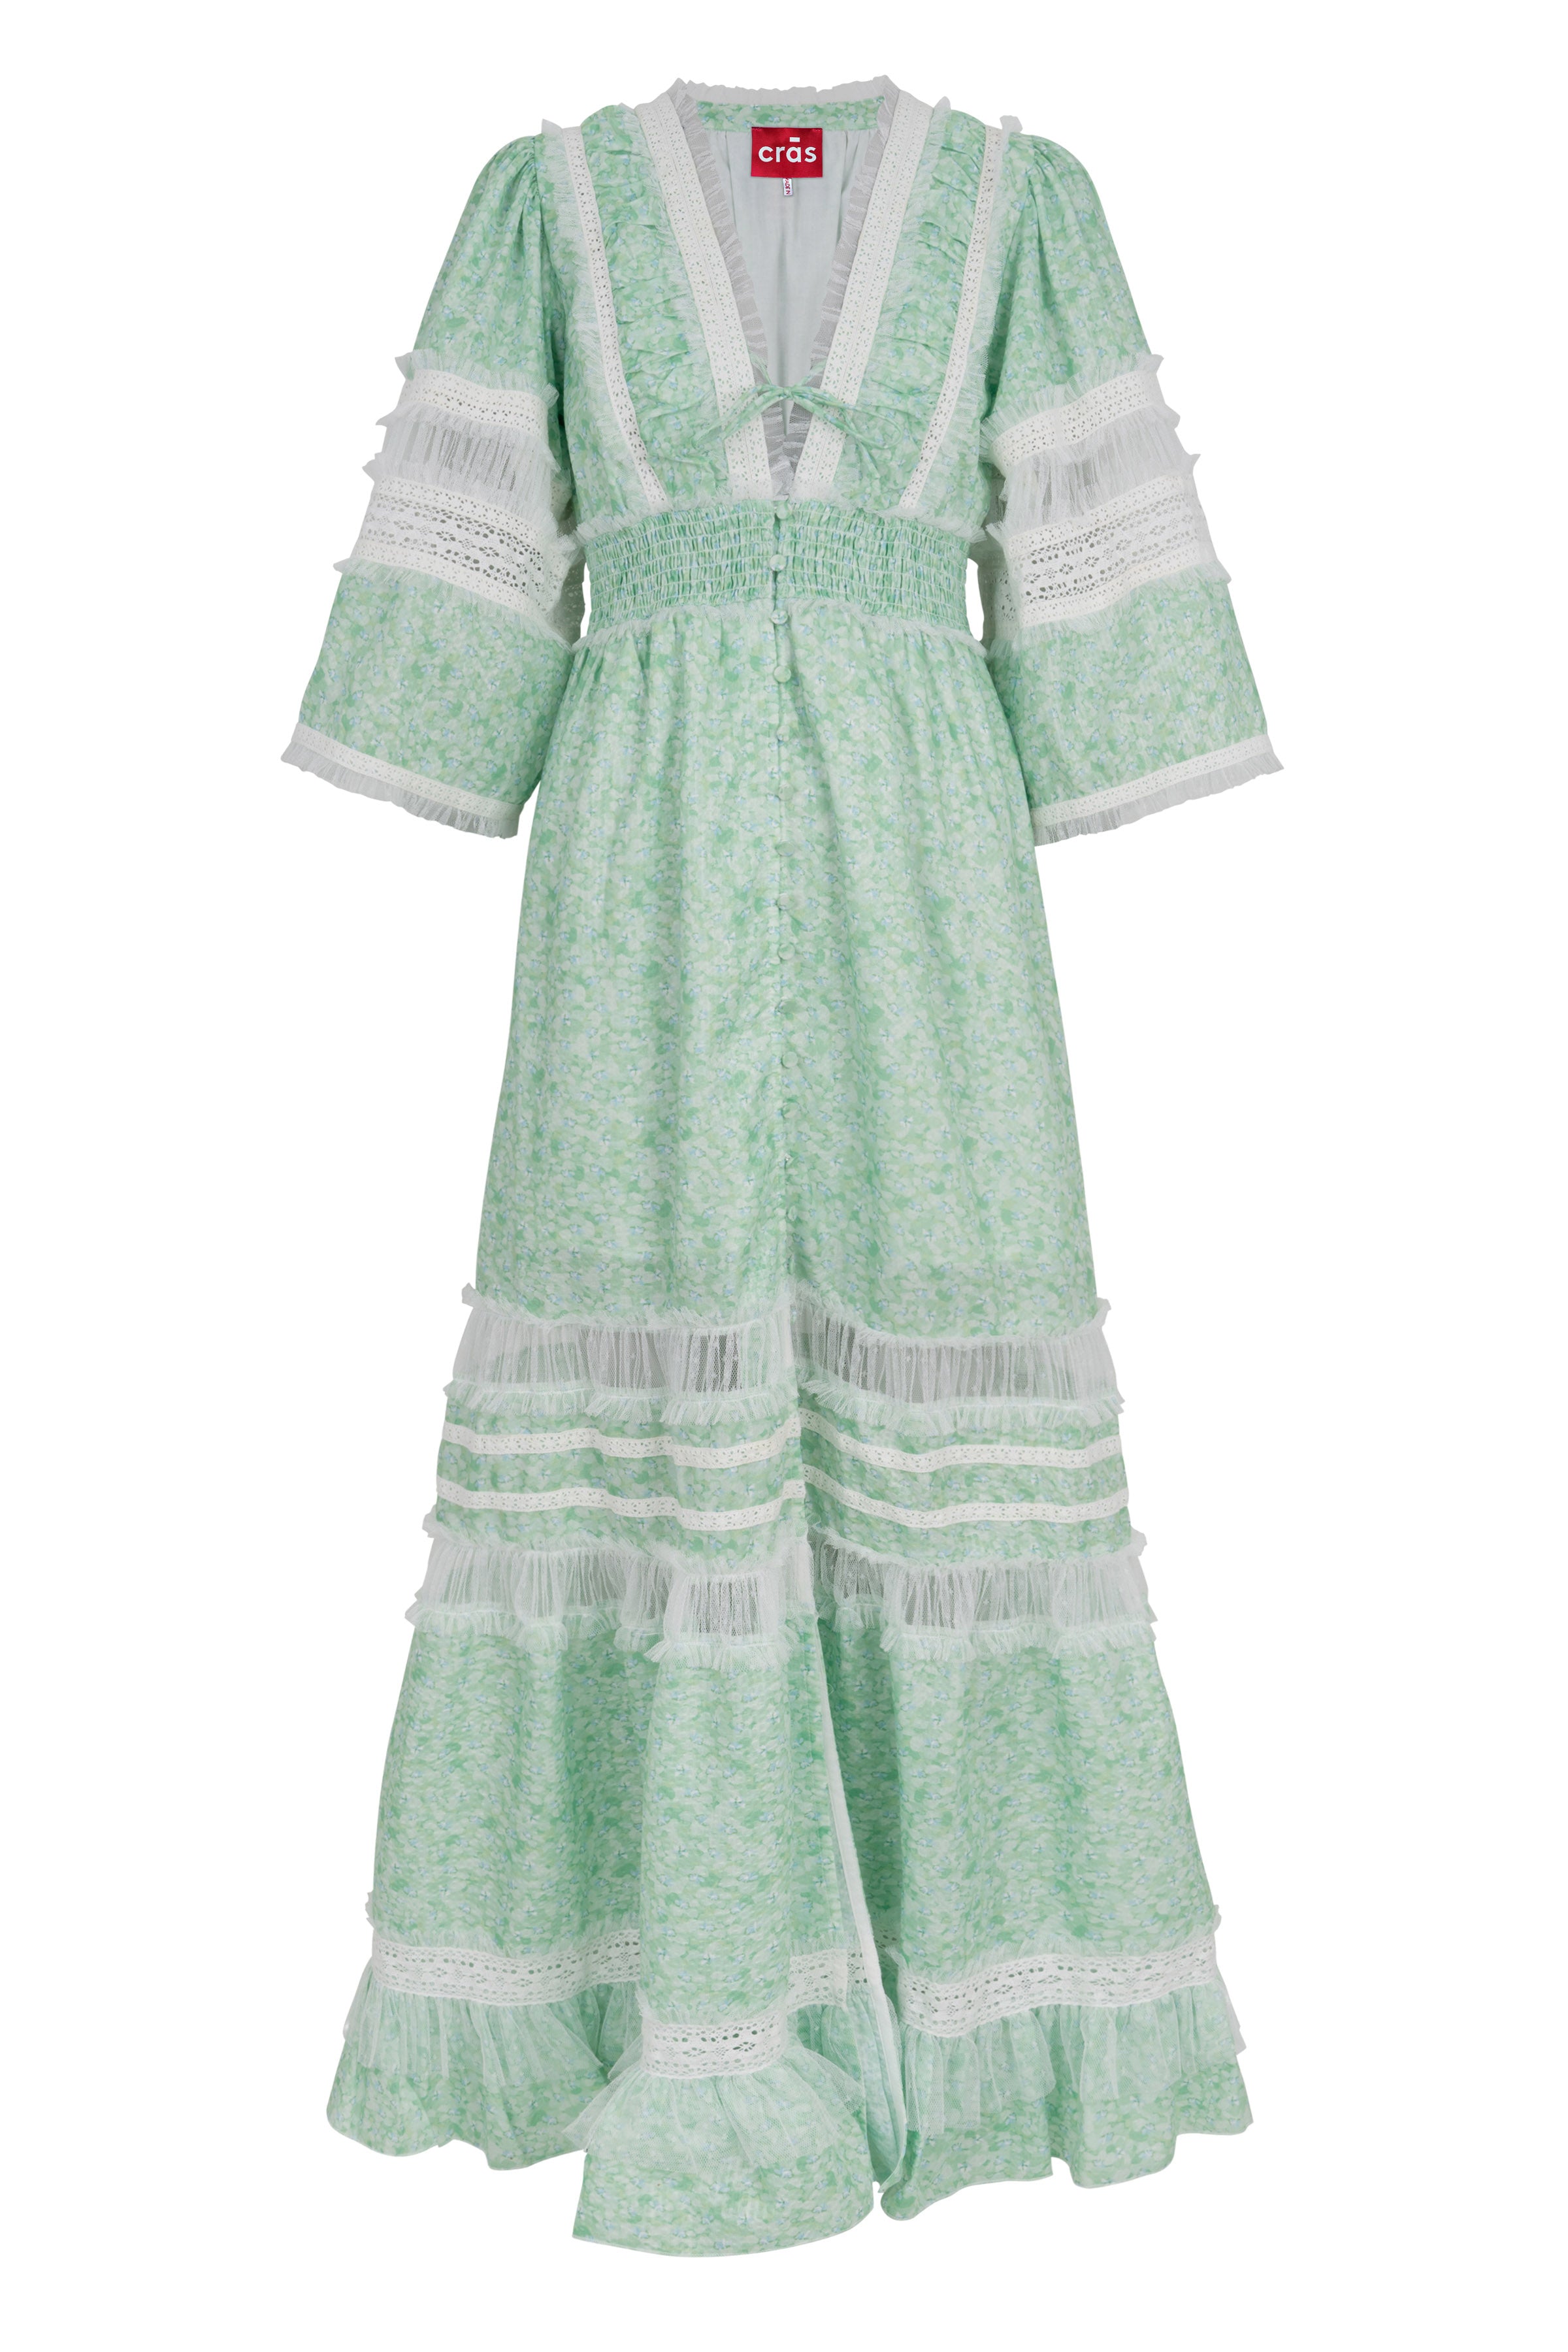 CRAS Mabel Dress Dress 8014 Seer Green